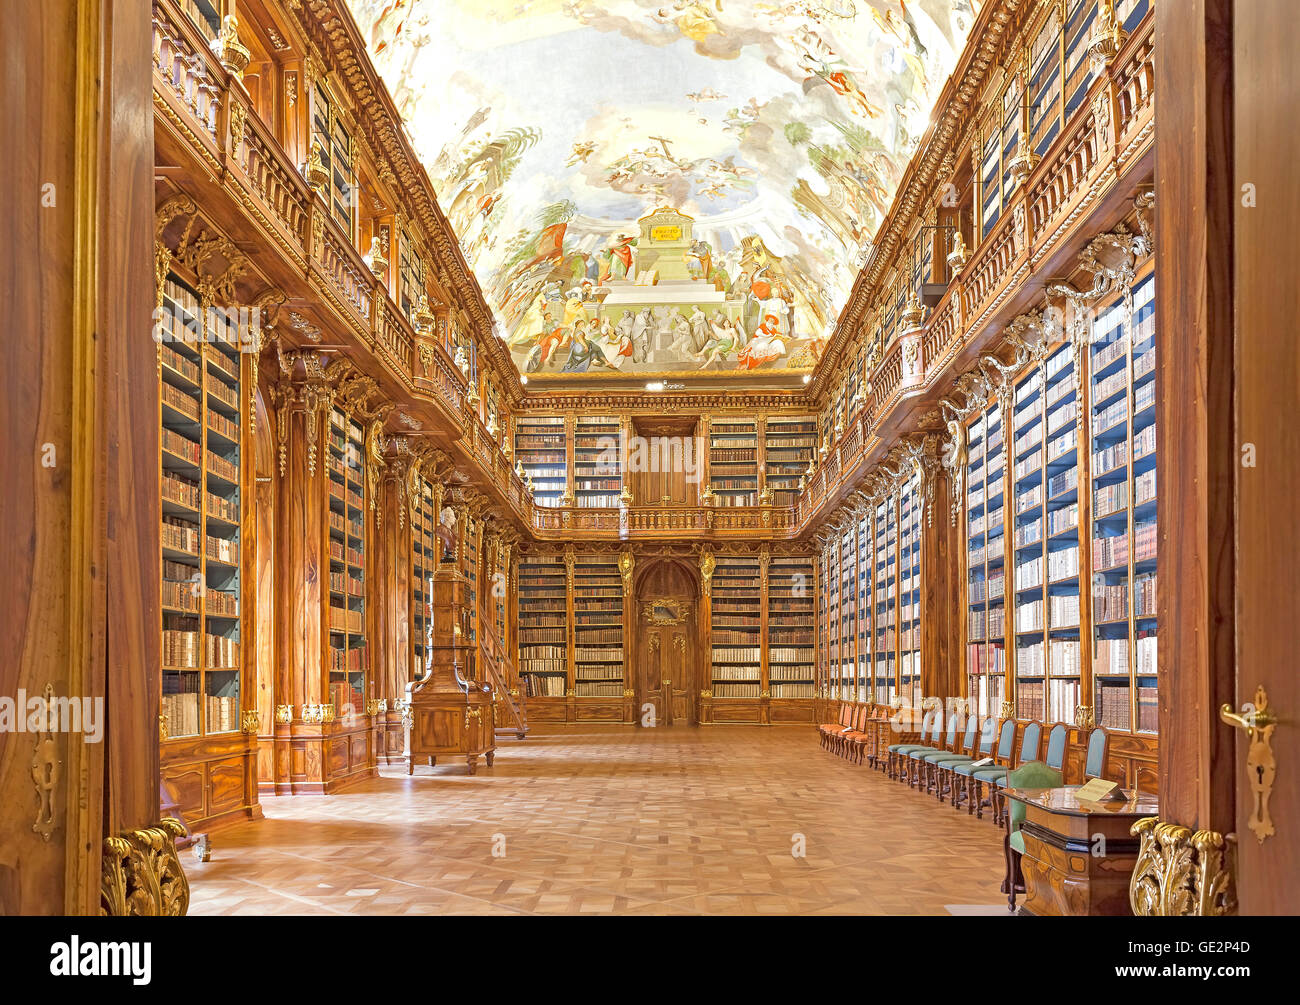 Prag, Tschechien - 15. Juni 2014: Bibliothek in Strahov Kloster in Prag, einer der schönsten Bibliothek Innenräume in Europa. Stockfoto